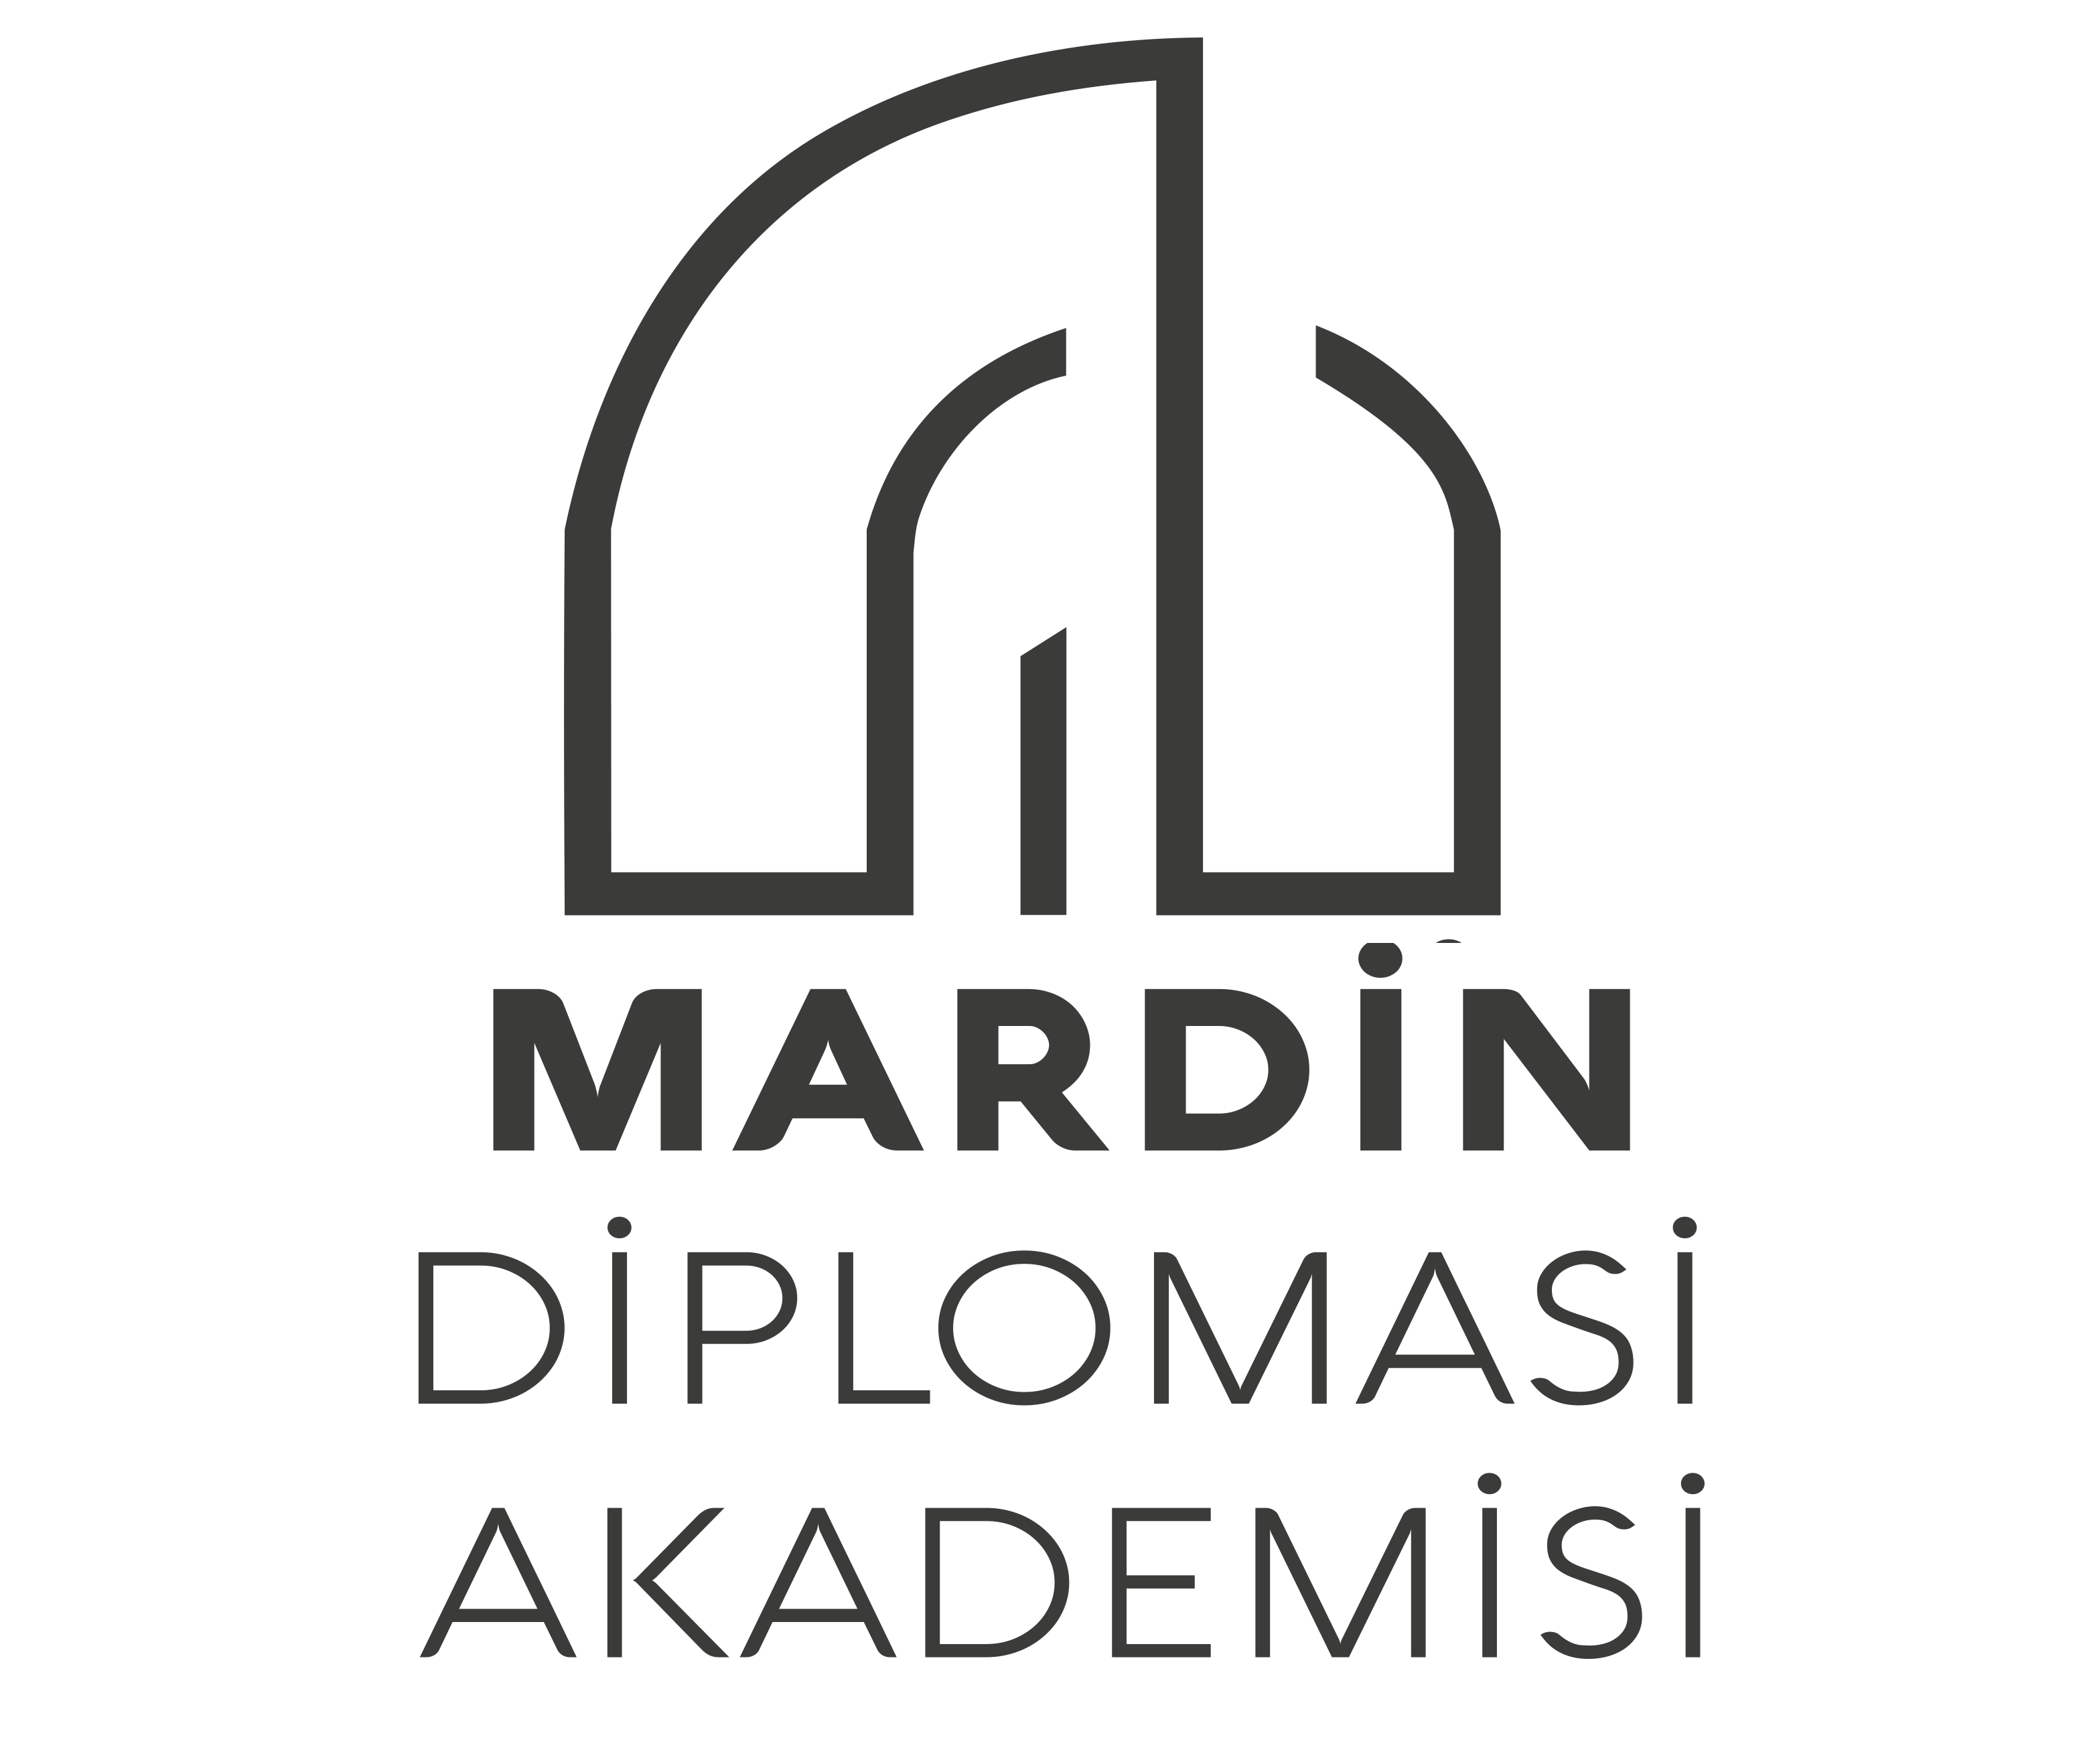 Mardin Diplomasi Akademisi